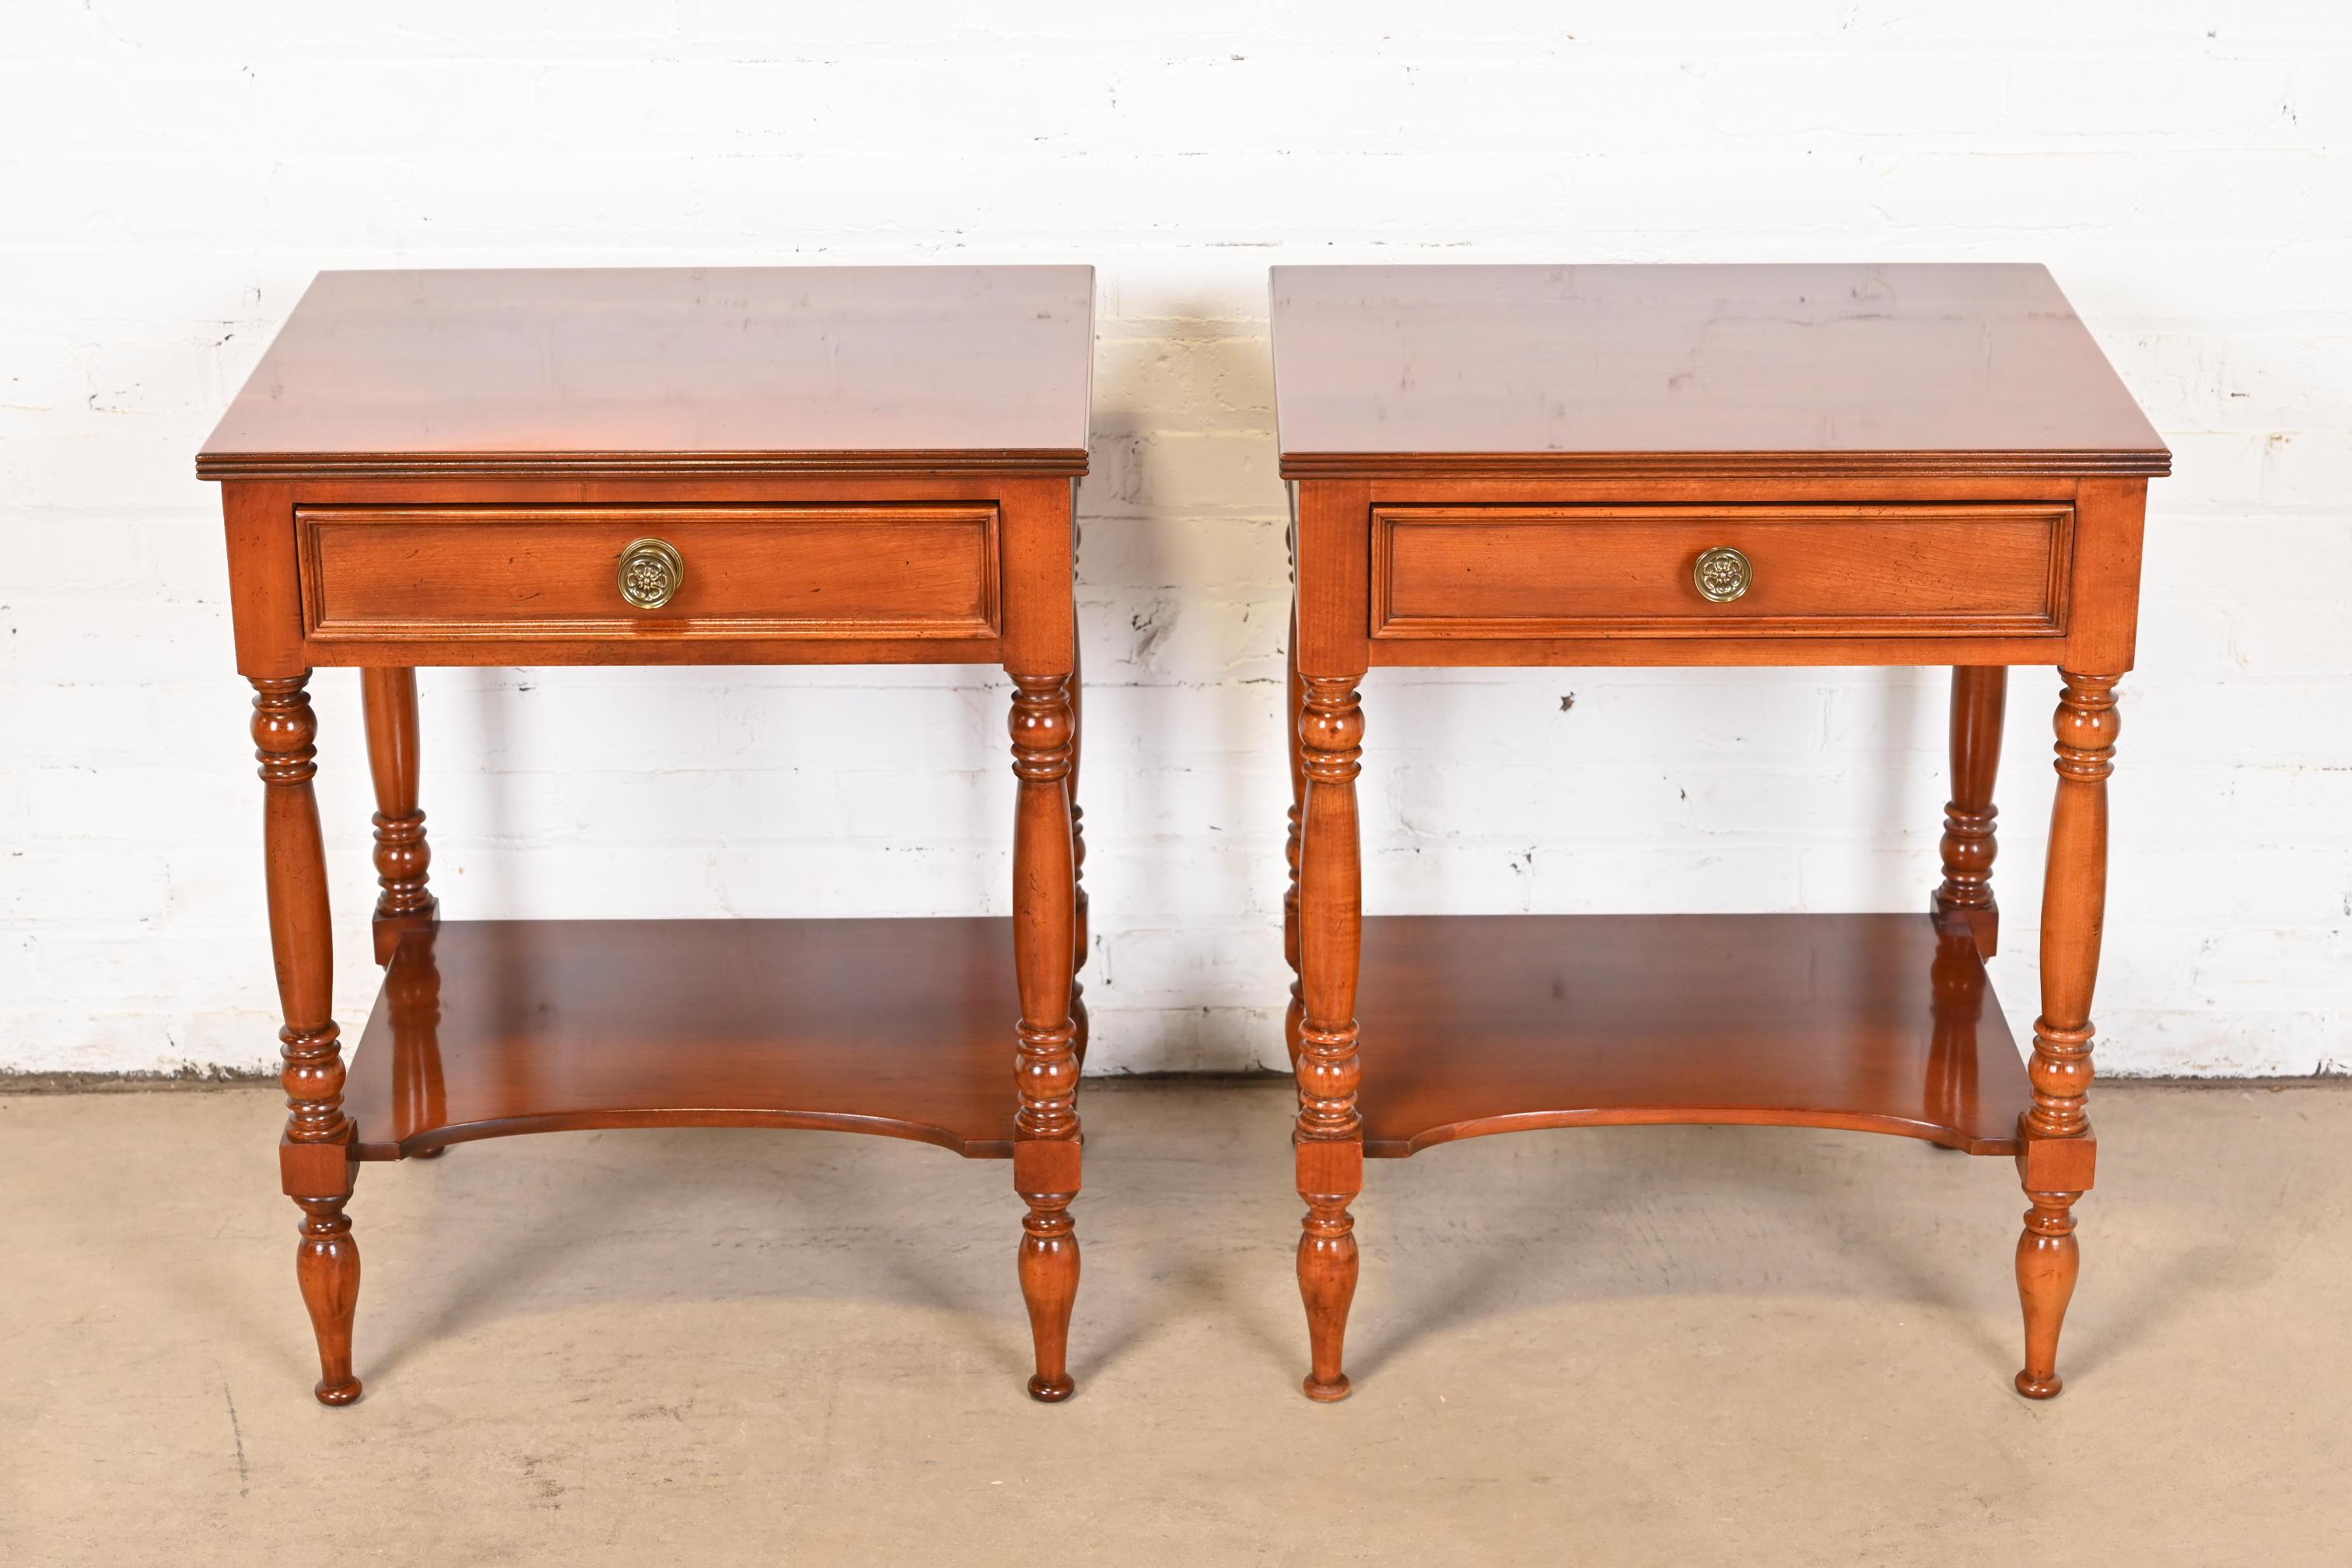 Exceptionnelle paire de tables de chevet ou de tables d'appoint de style Coloni américain.

Par Baker Furniture, Collection 